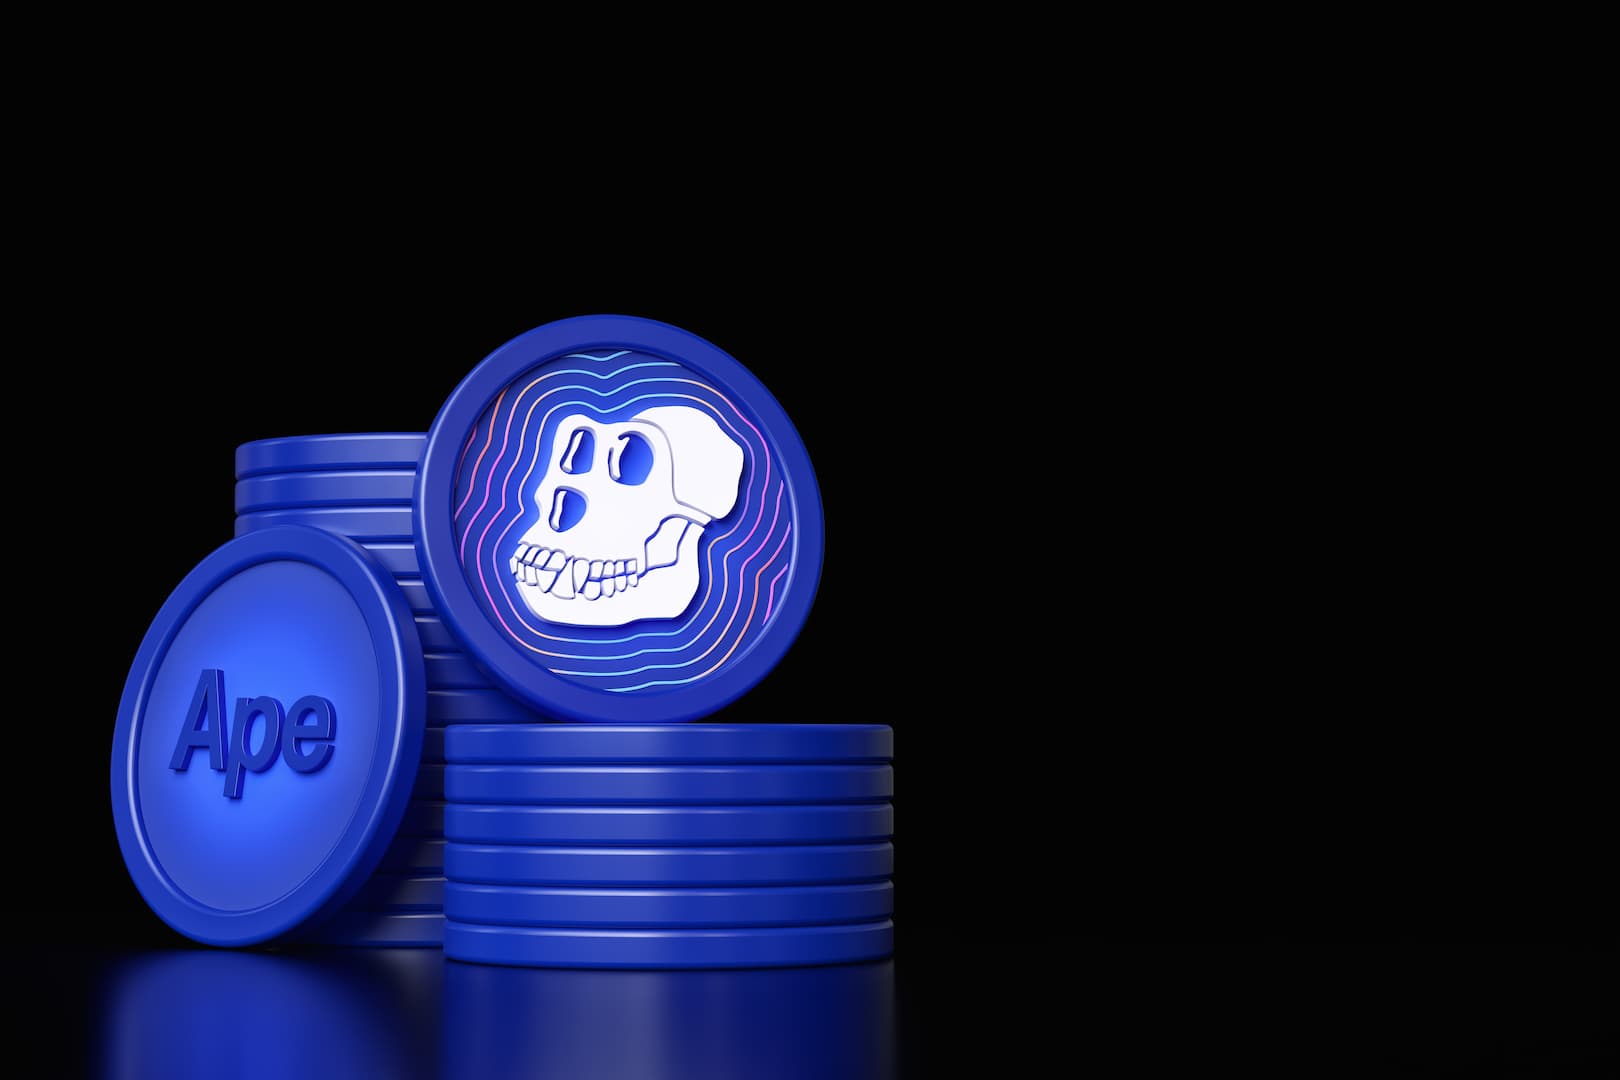 A imagem mostra duas pilhas de moedas azuis, representando a ApeCoin, em frente a um fundo preto. Há uma moeda estampada com o desenho de um crânio de macaco posta de pé em cima de uma das pilhas. Encostada na outra pilha, há uma moeda com o dizer “Ape”.